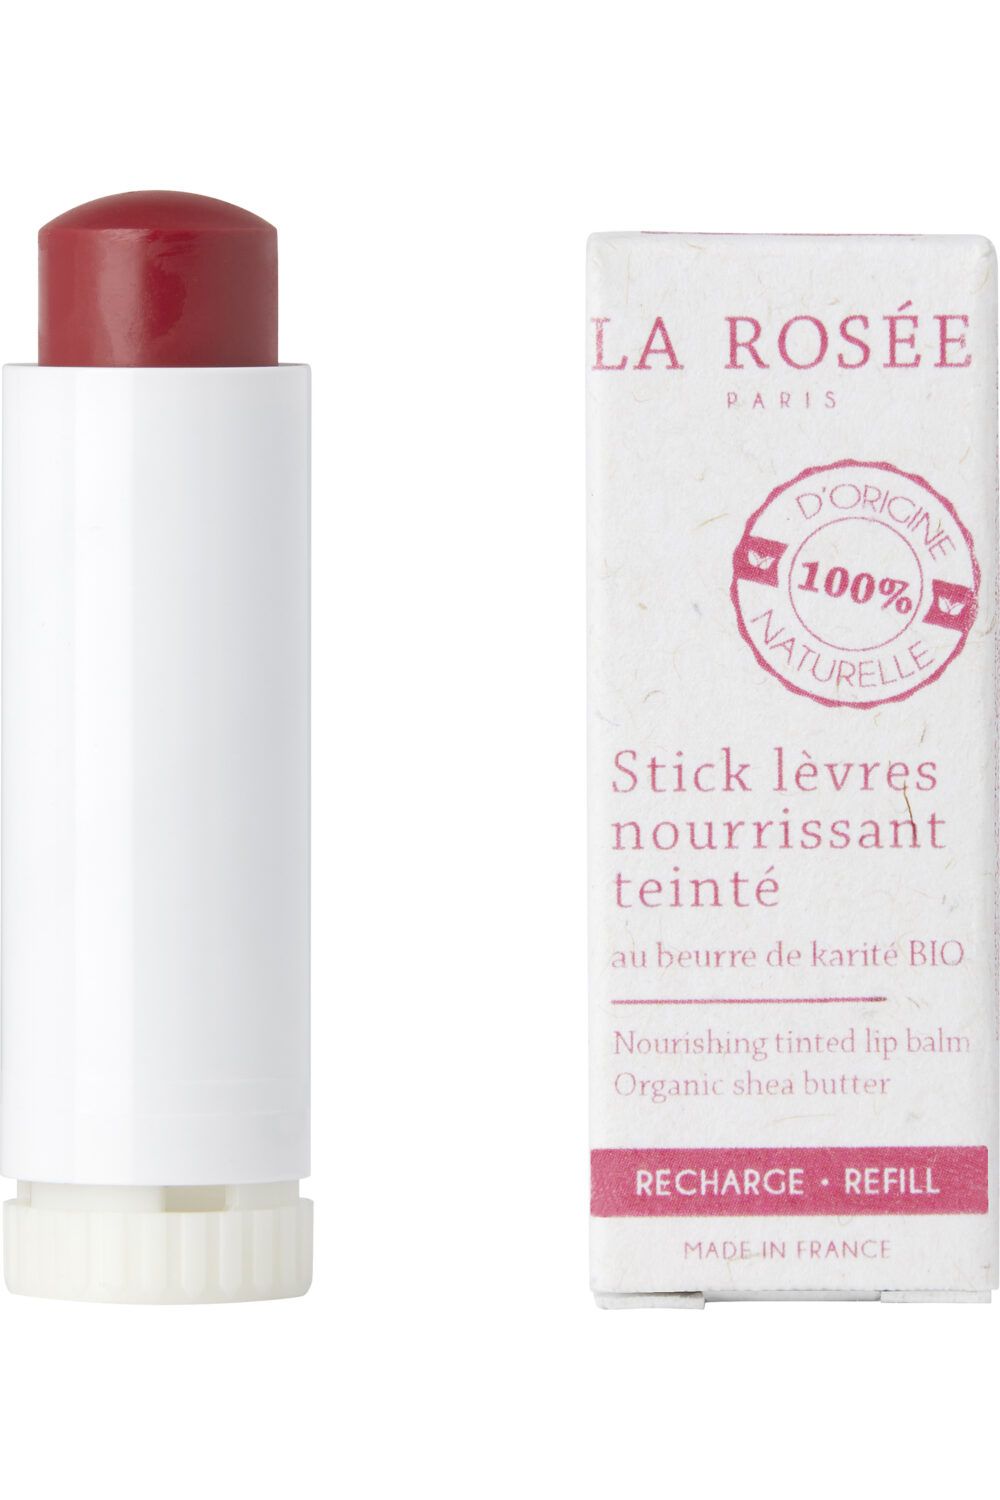 La Rosée - Stick lèvres nourrissant teinté rechargeable au beurre de karité BIO Recharge